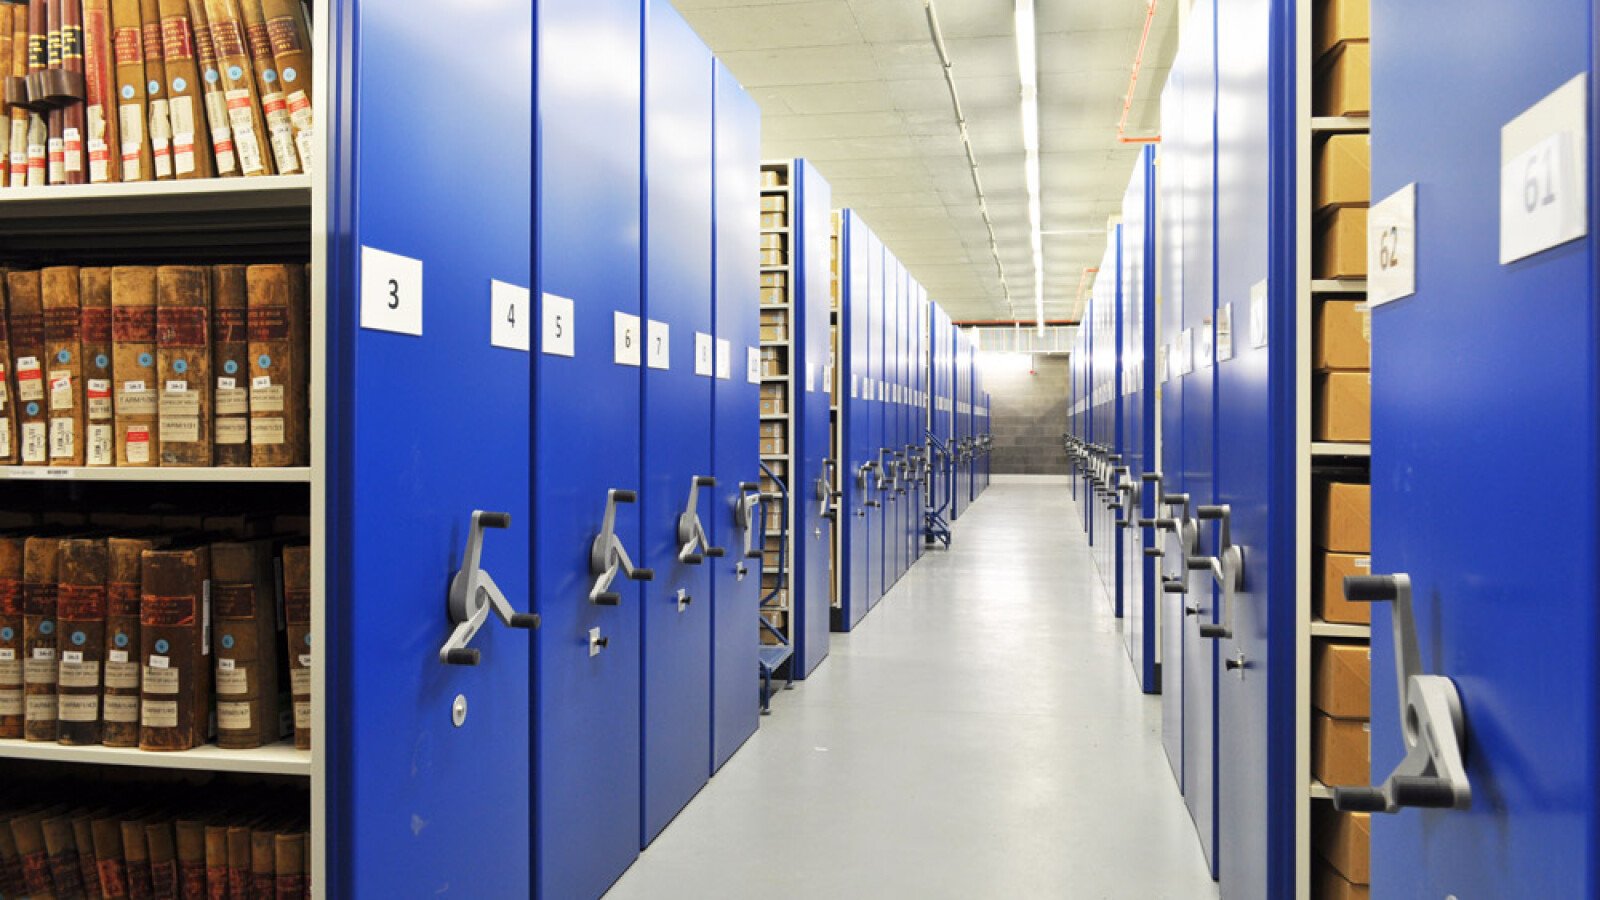 Systèmes de stockage mobiles pour archives - Une histoire d’innovations